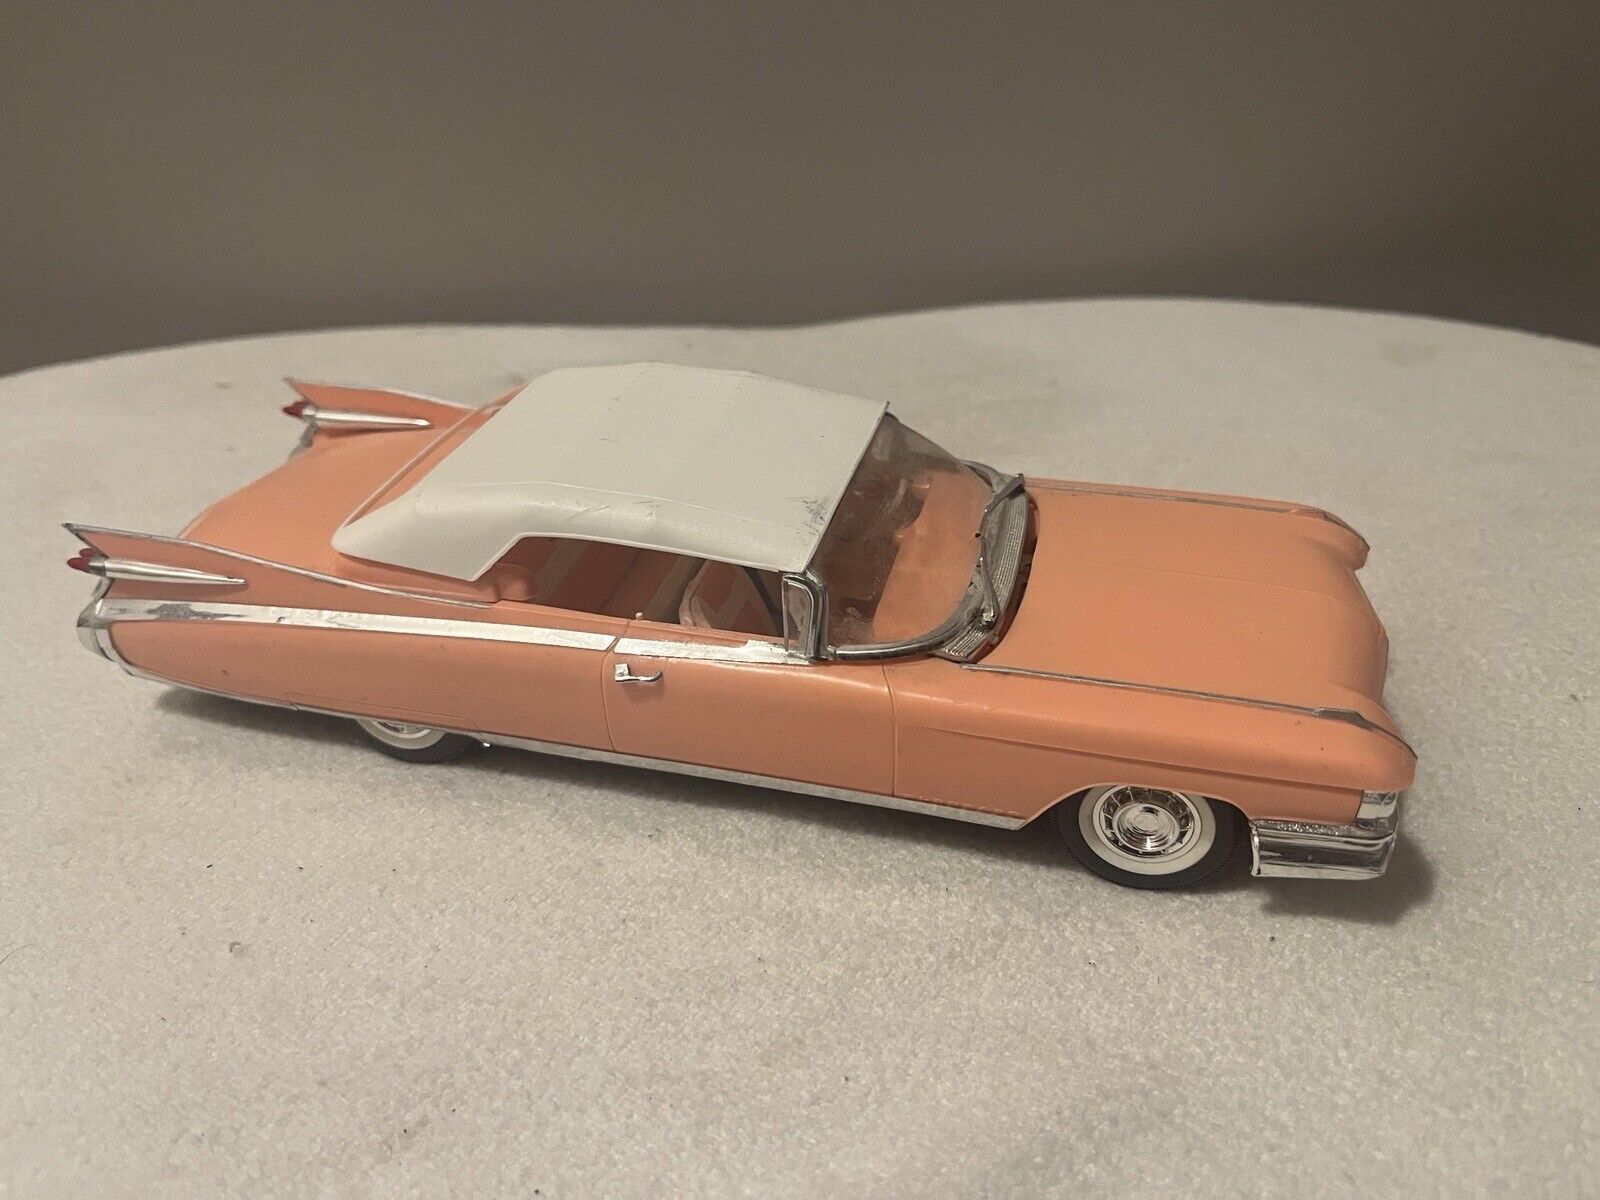 RARE Vintage Promo Car Model 1960s Cadillac Convertible~Peach